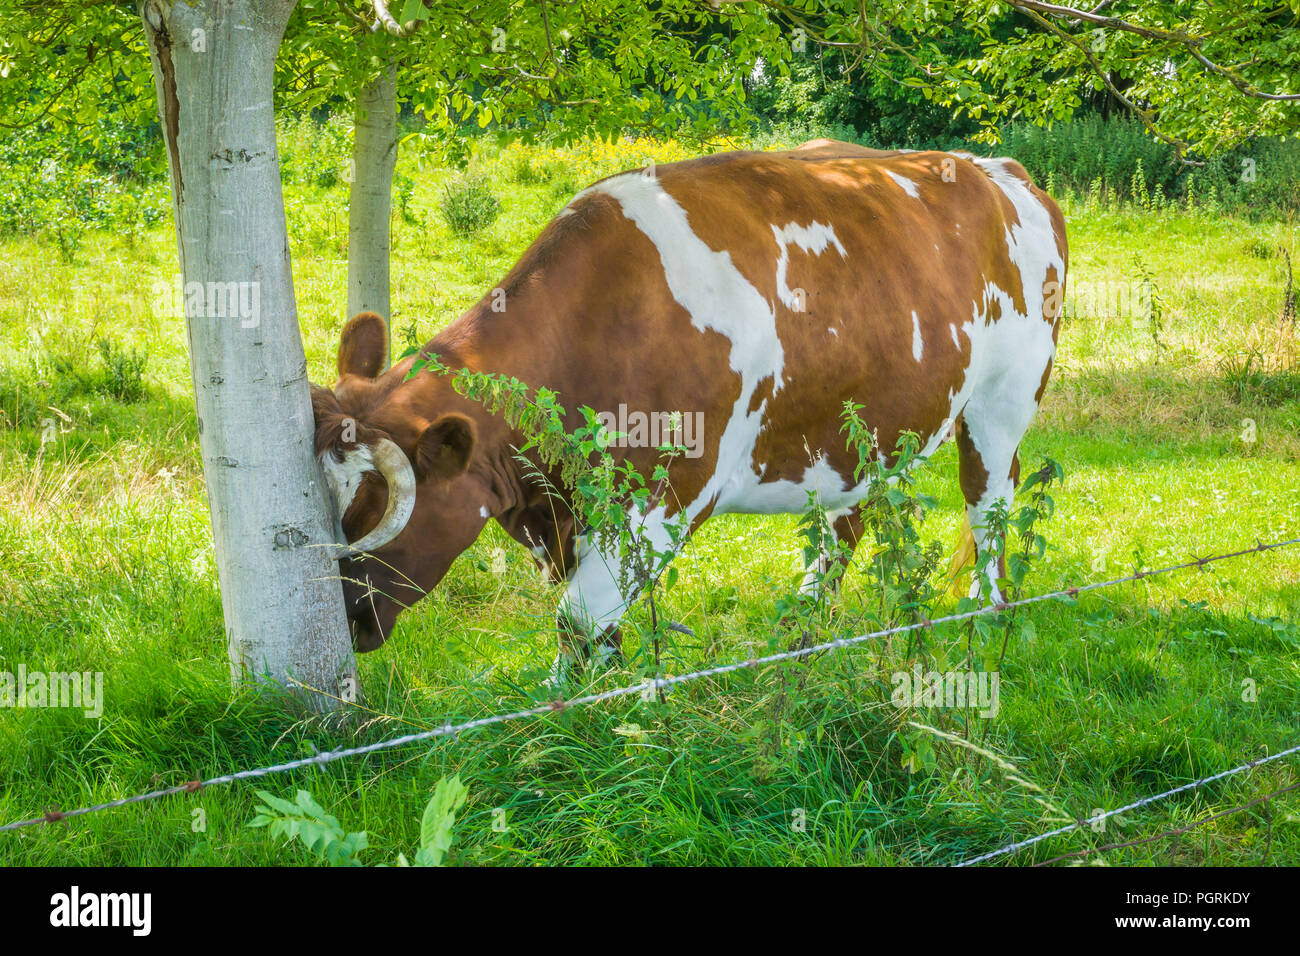 Vache cornes frottant sa tête contre un tronc d'arbre Banque D'Images